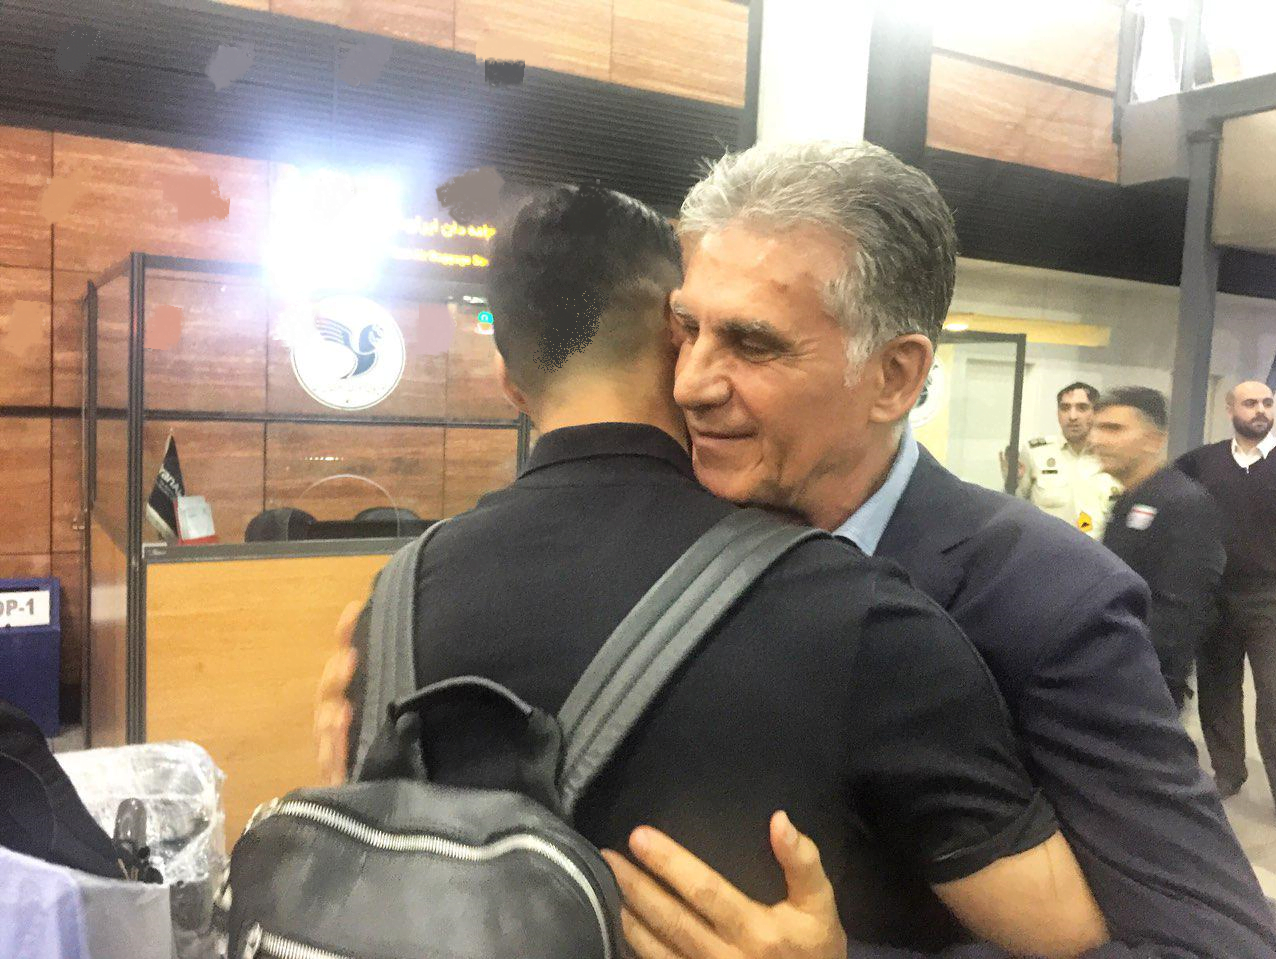 کارلوس کی‌روش سرمربی تیم ملی فوتبال ایران است کارلوس کی‌روش هنگام خداحافظی با بازیکنان در فرودگاه اشک در چشمانش حلق زد و گریه کرد.